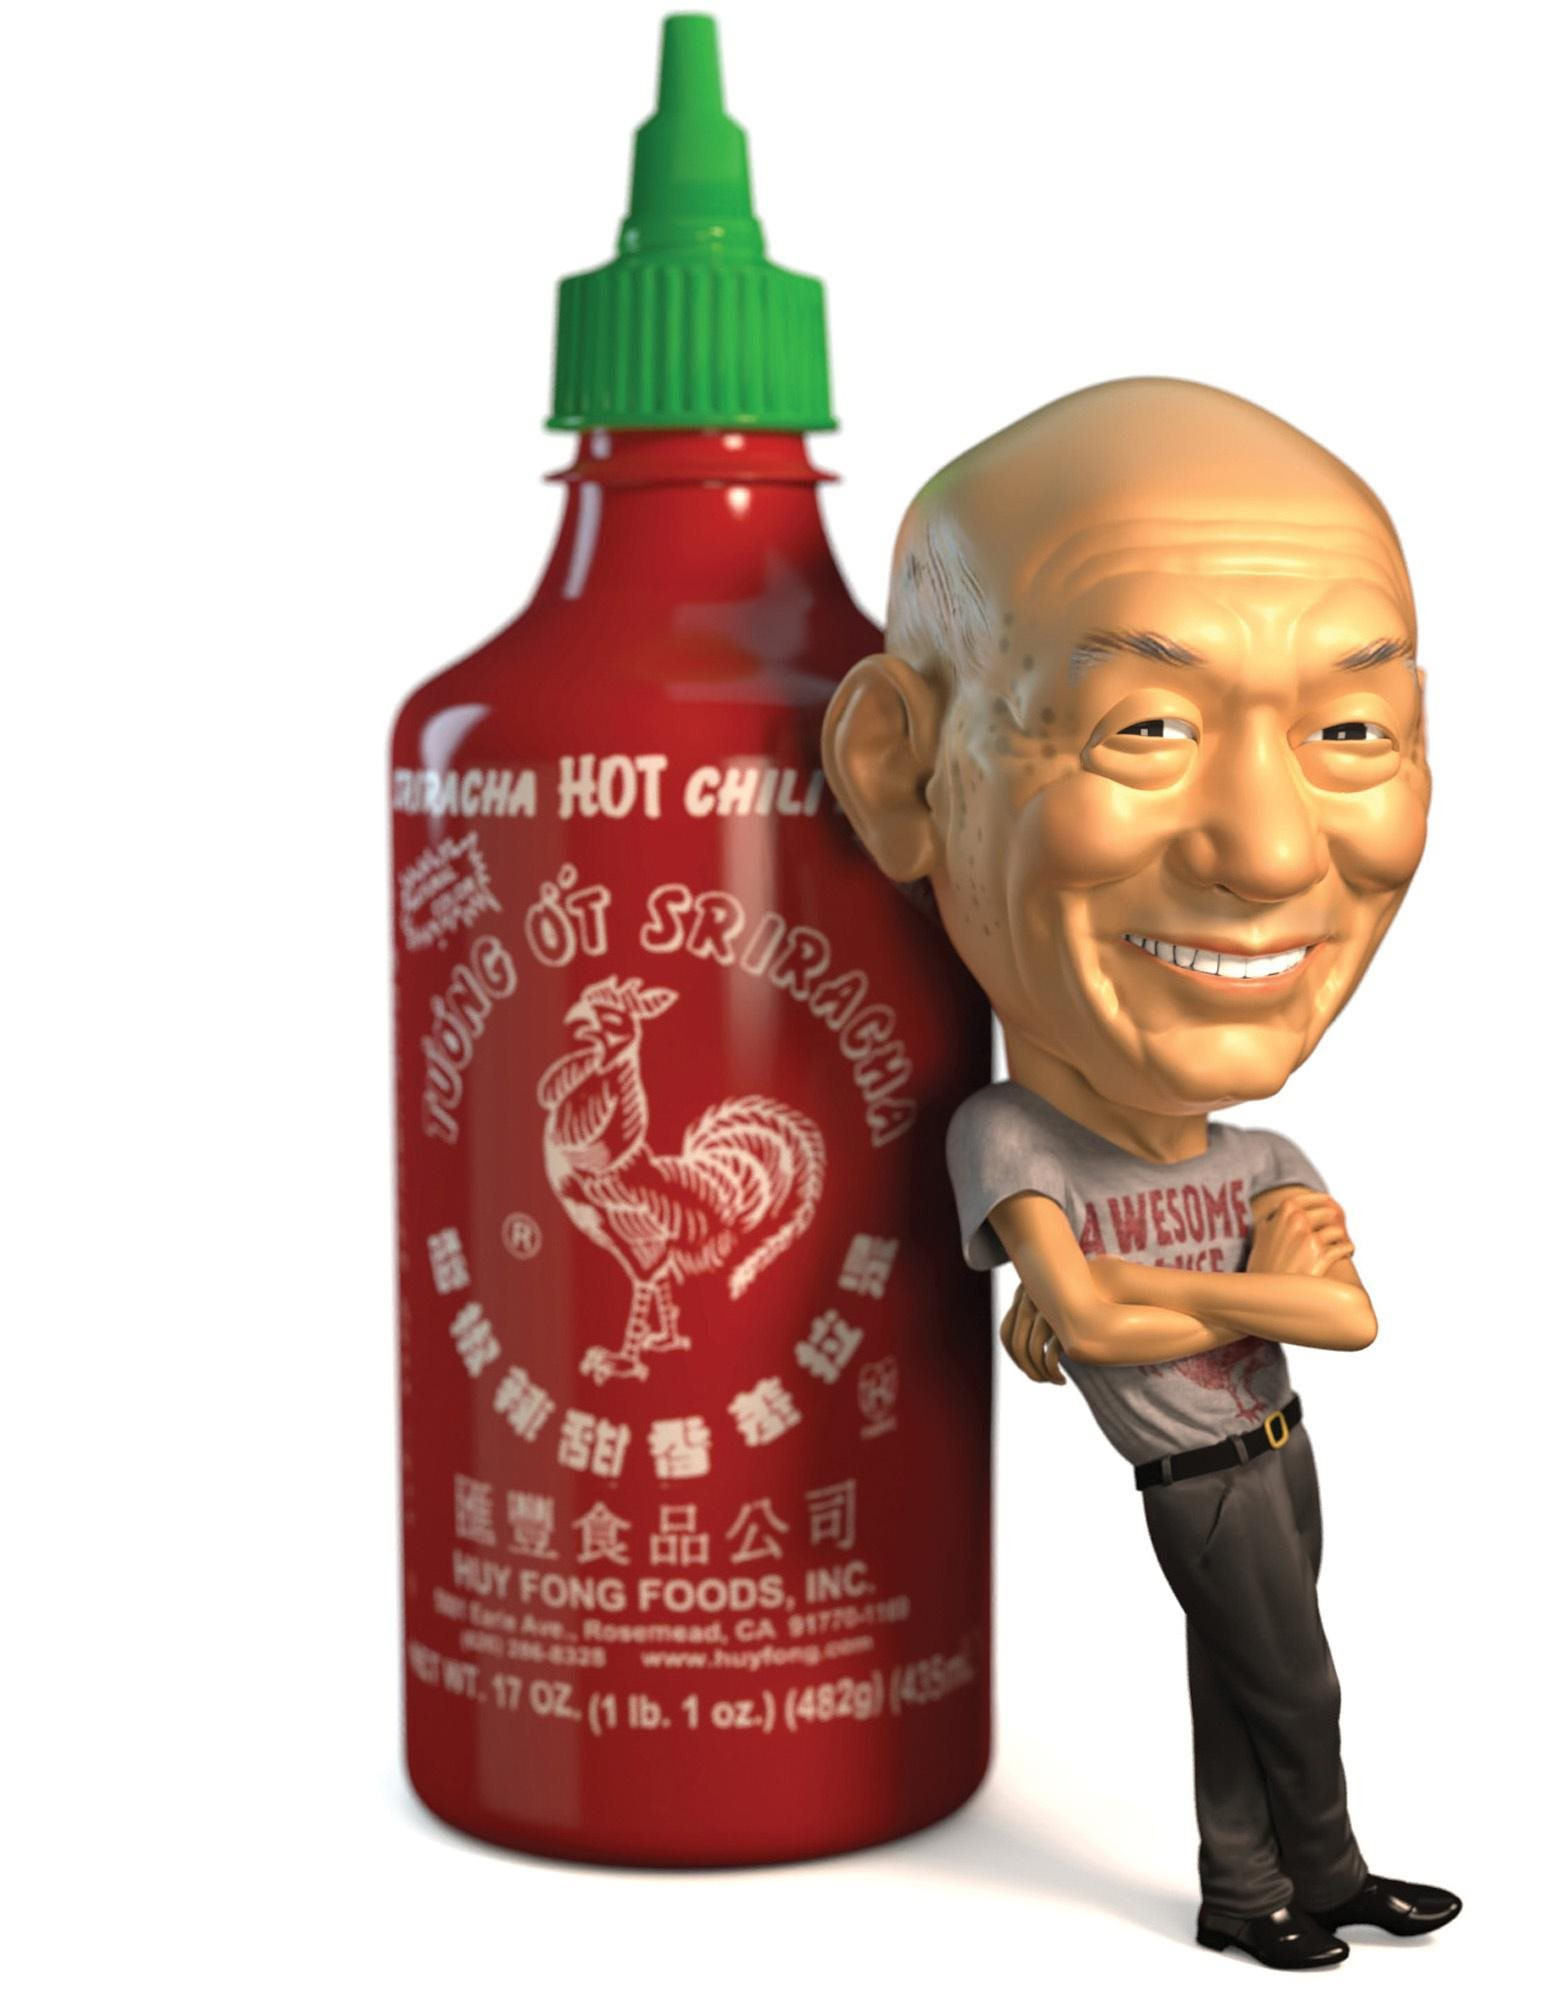 Vua tương ớt gốc Việt chính thức trở thành tỷ phú đôla: Không tốn 1 xu quảng cáo, 40 năm không tăng giá bán buôn, âm thầm đưa Sriracha lên bàn ăn khắp thế giới